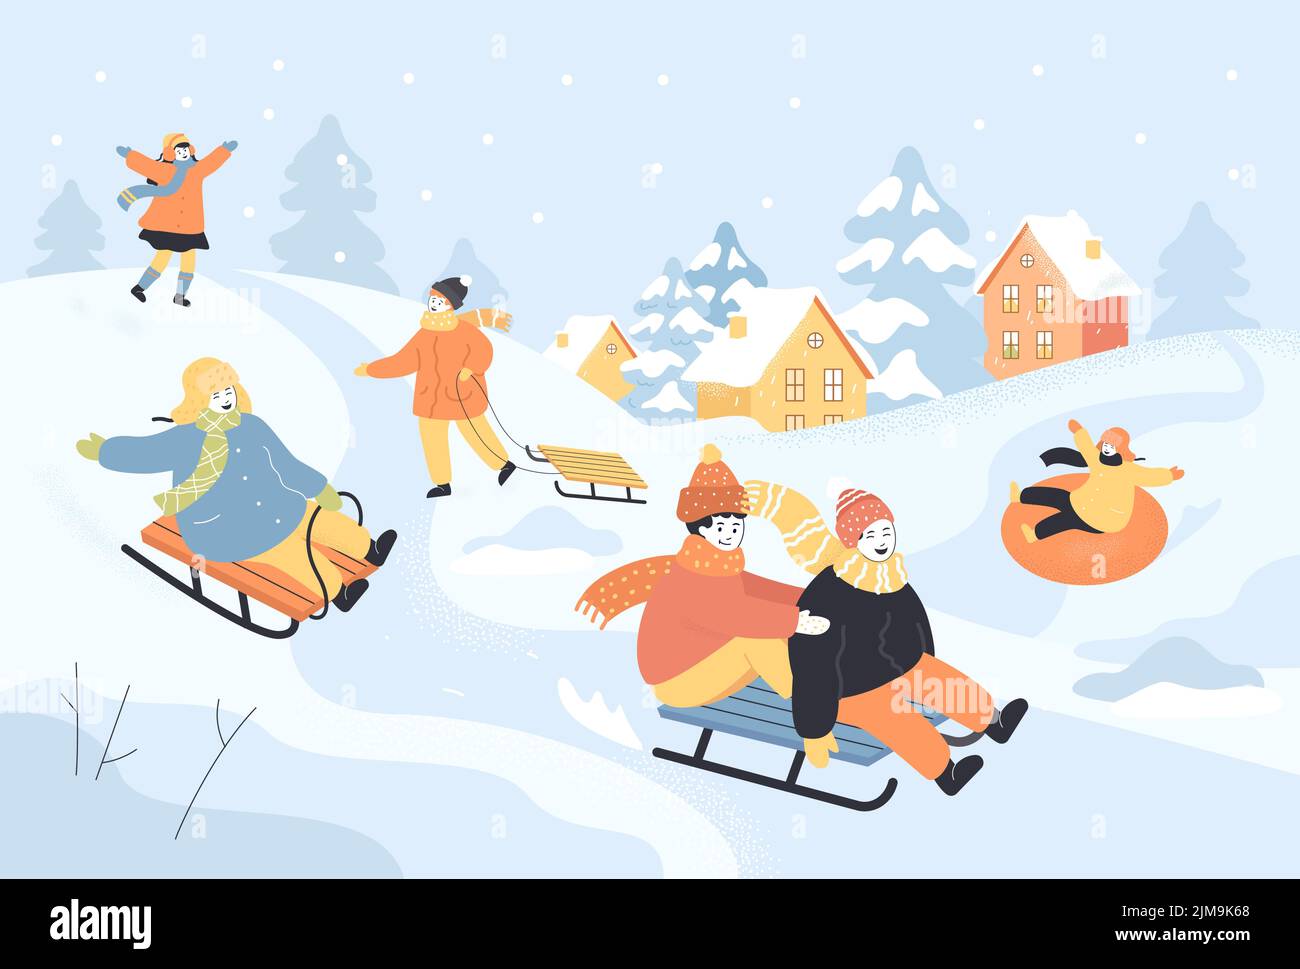 Happy Cartoon Kinder rutschen den Berg hinunter auf Schlitten. Schnee fällt, Kinder Spaß haben, während Rodeln nach unten Folie flache Vektor-Illustration. Winteraktivitäten Stock Vektor